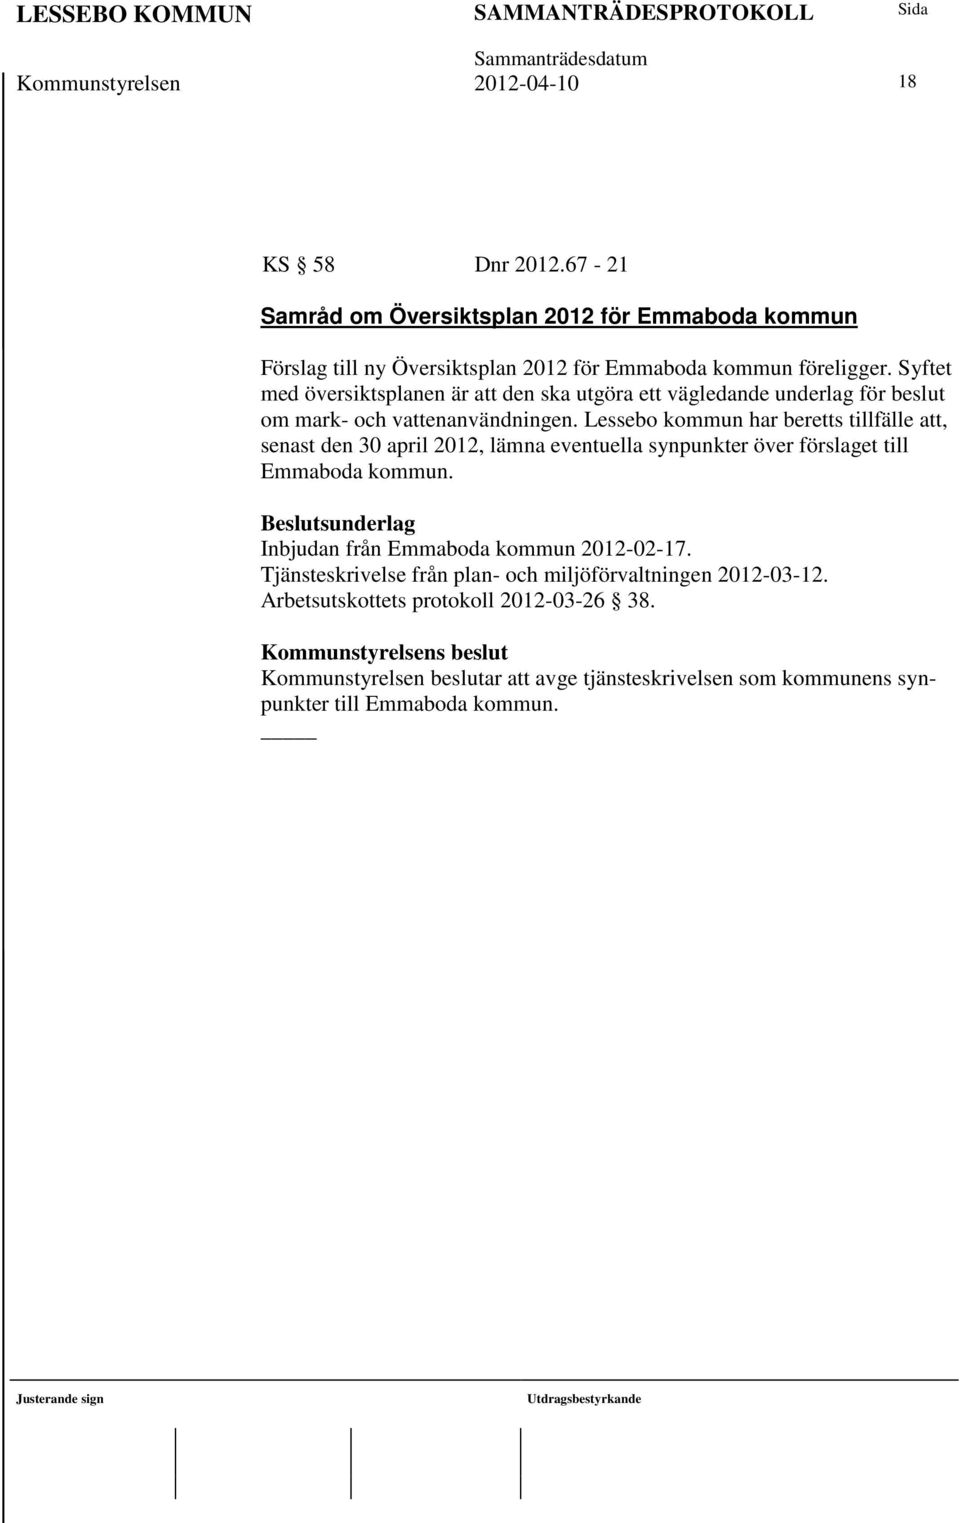 Lessebo kommun har beretts tillfälle att, senast den 30 april 2012, lämna eventuella synpunkter över förslaget till Emmaboda kommun.